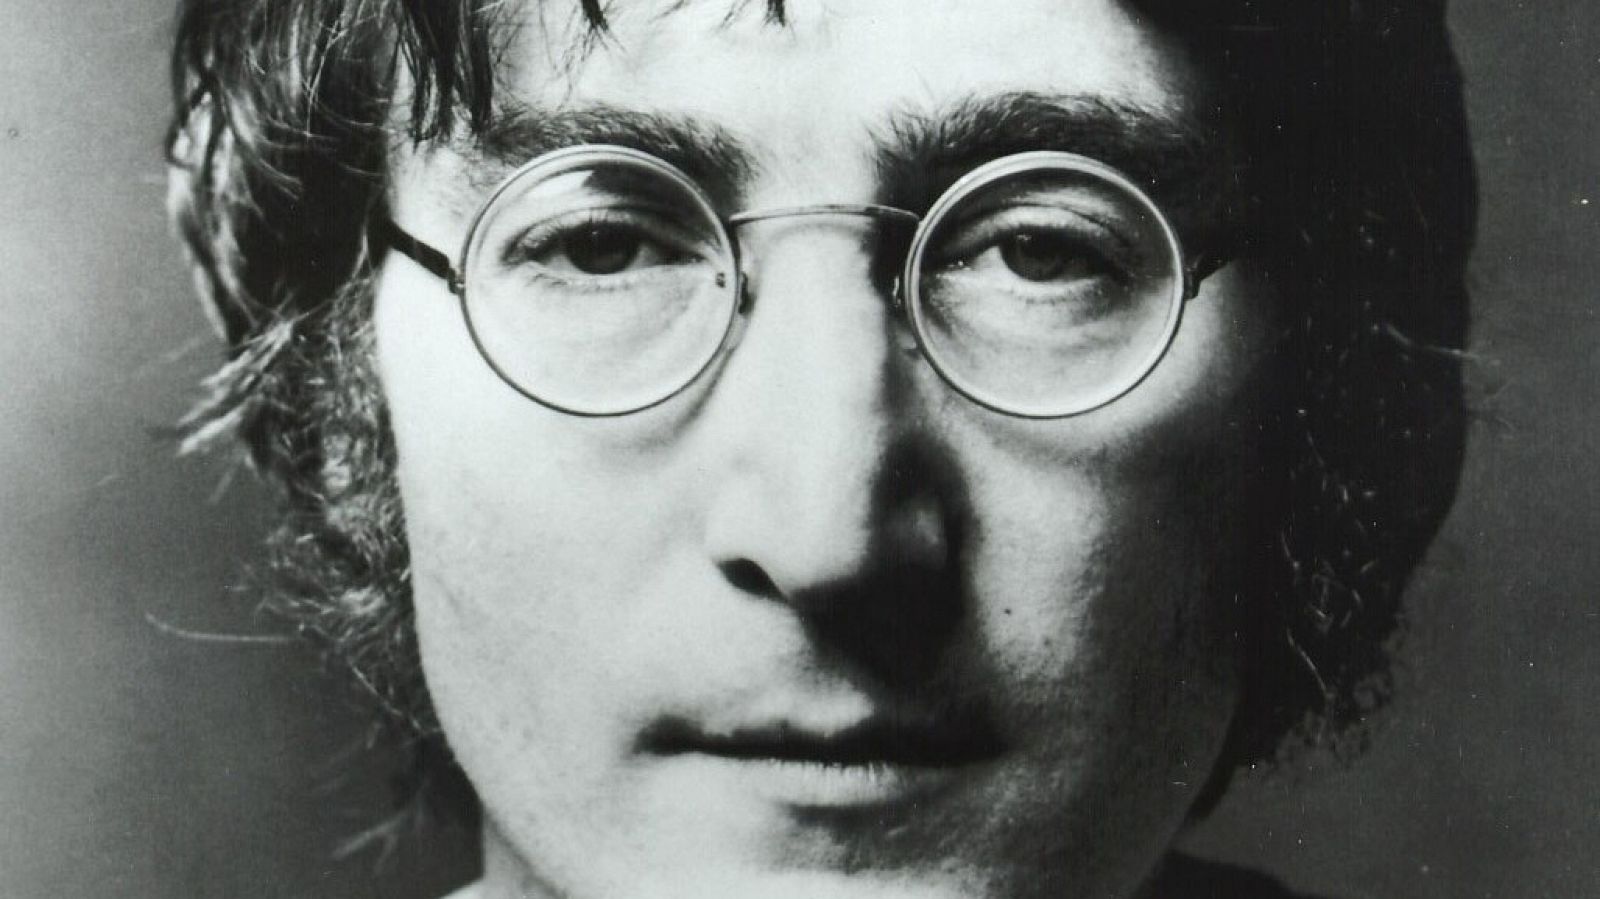 Se cumplen 80 años del nacimiento de John Lennon